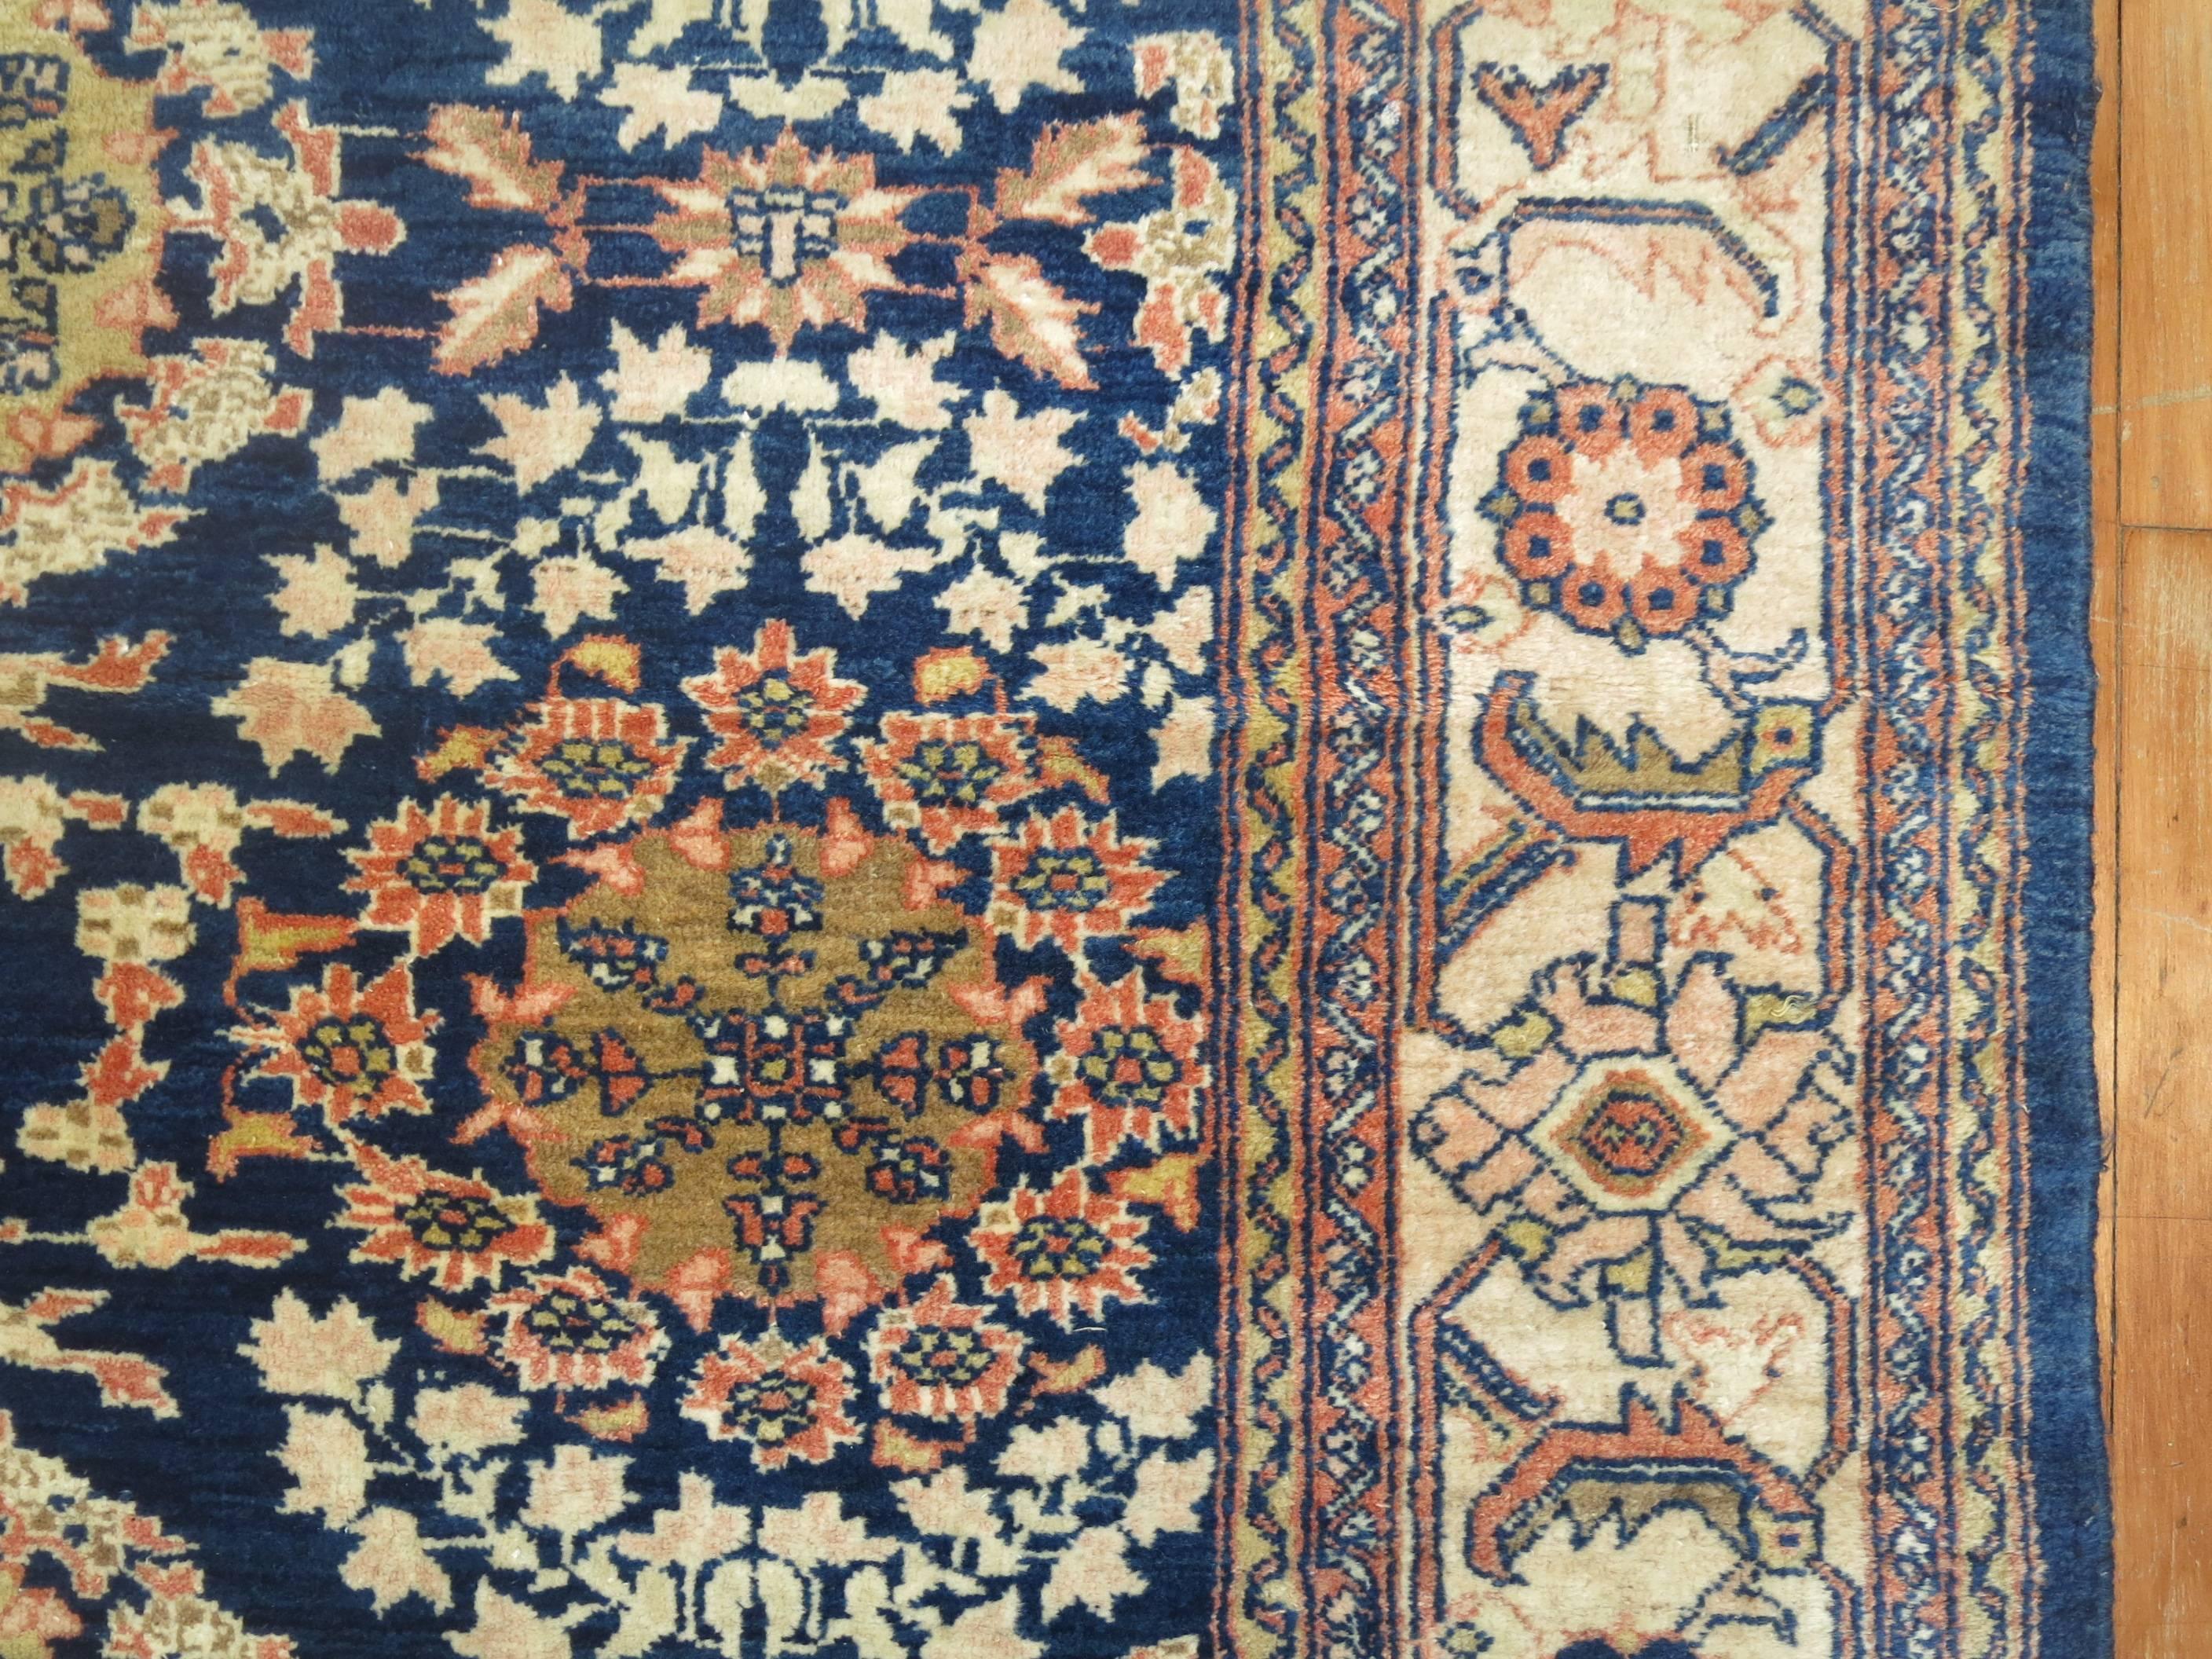 Zimmergroßer persischer Mahal-Teppich mit blauem Feld und elfenbeinfarbener Bordüre.

Mahal-Perserteppiche aus dem 19. und 20. Jahrhundert gehören zu den begehrtesten unter den persischen Dorfteppichen, da sie sowohl bei Kennern als auch bei